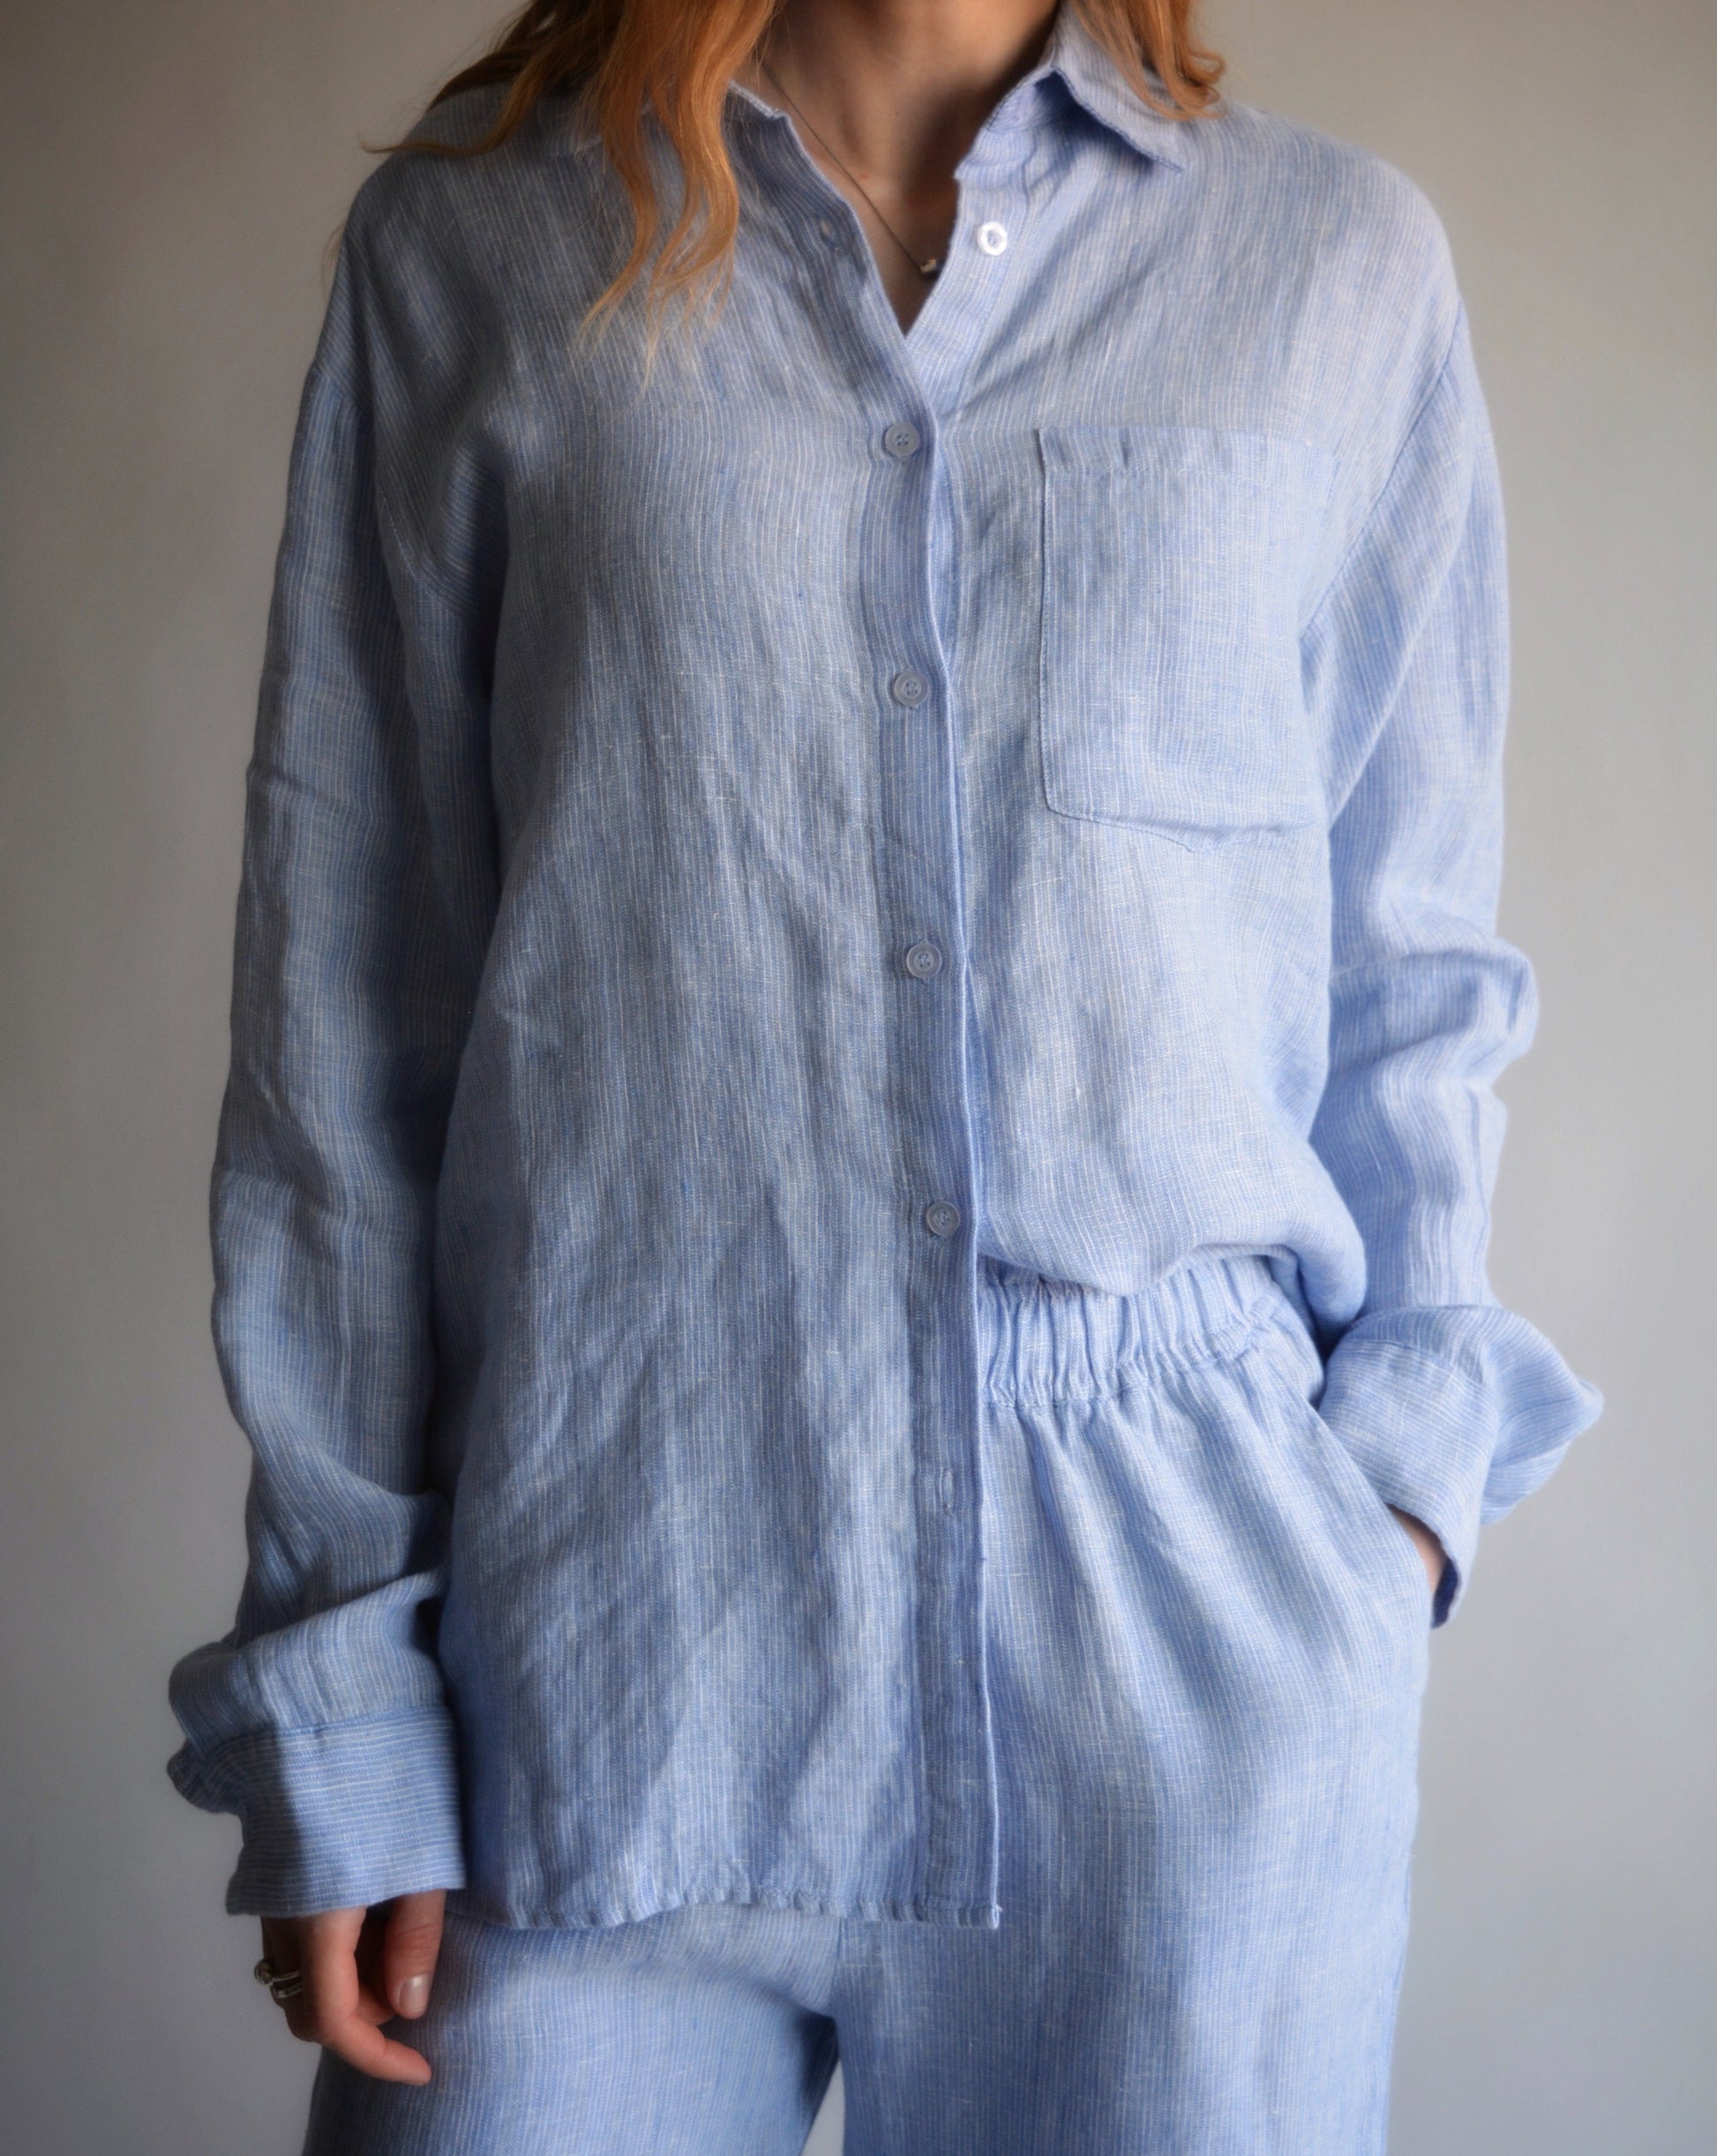 Cotton Muslin Sleepwear Set in Misty Grey color – Moon Mountain